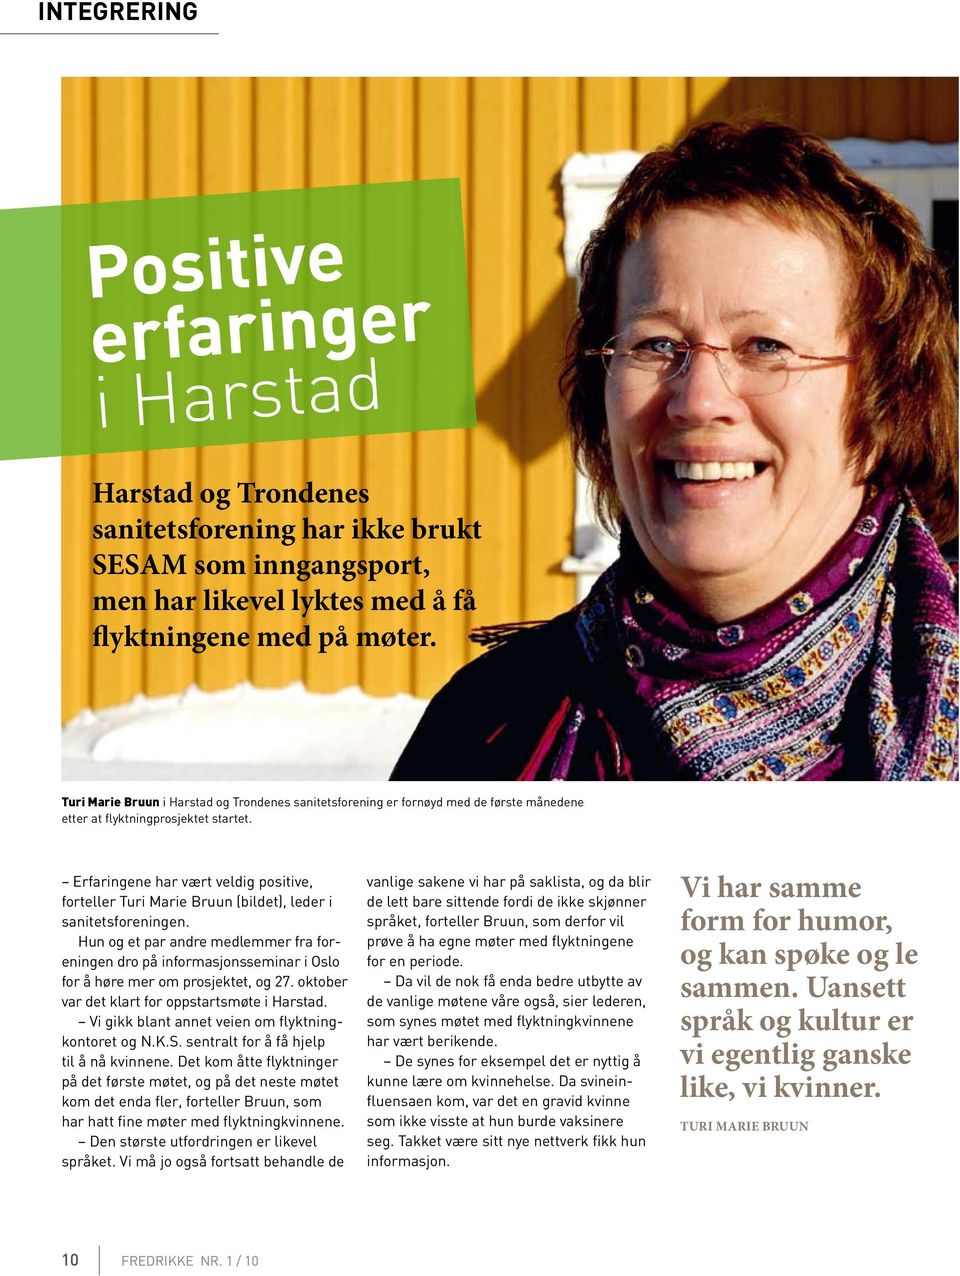 Erfaringene har vært veldig positive, forteller Turi Marie Bruun (bildet), leder i sanitetsforeningen.